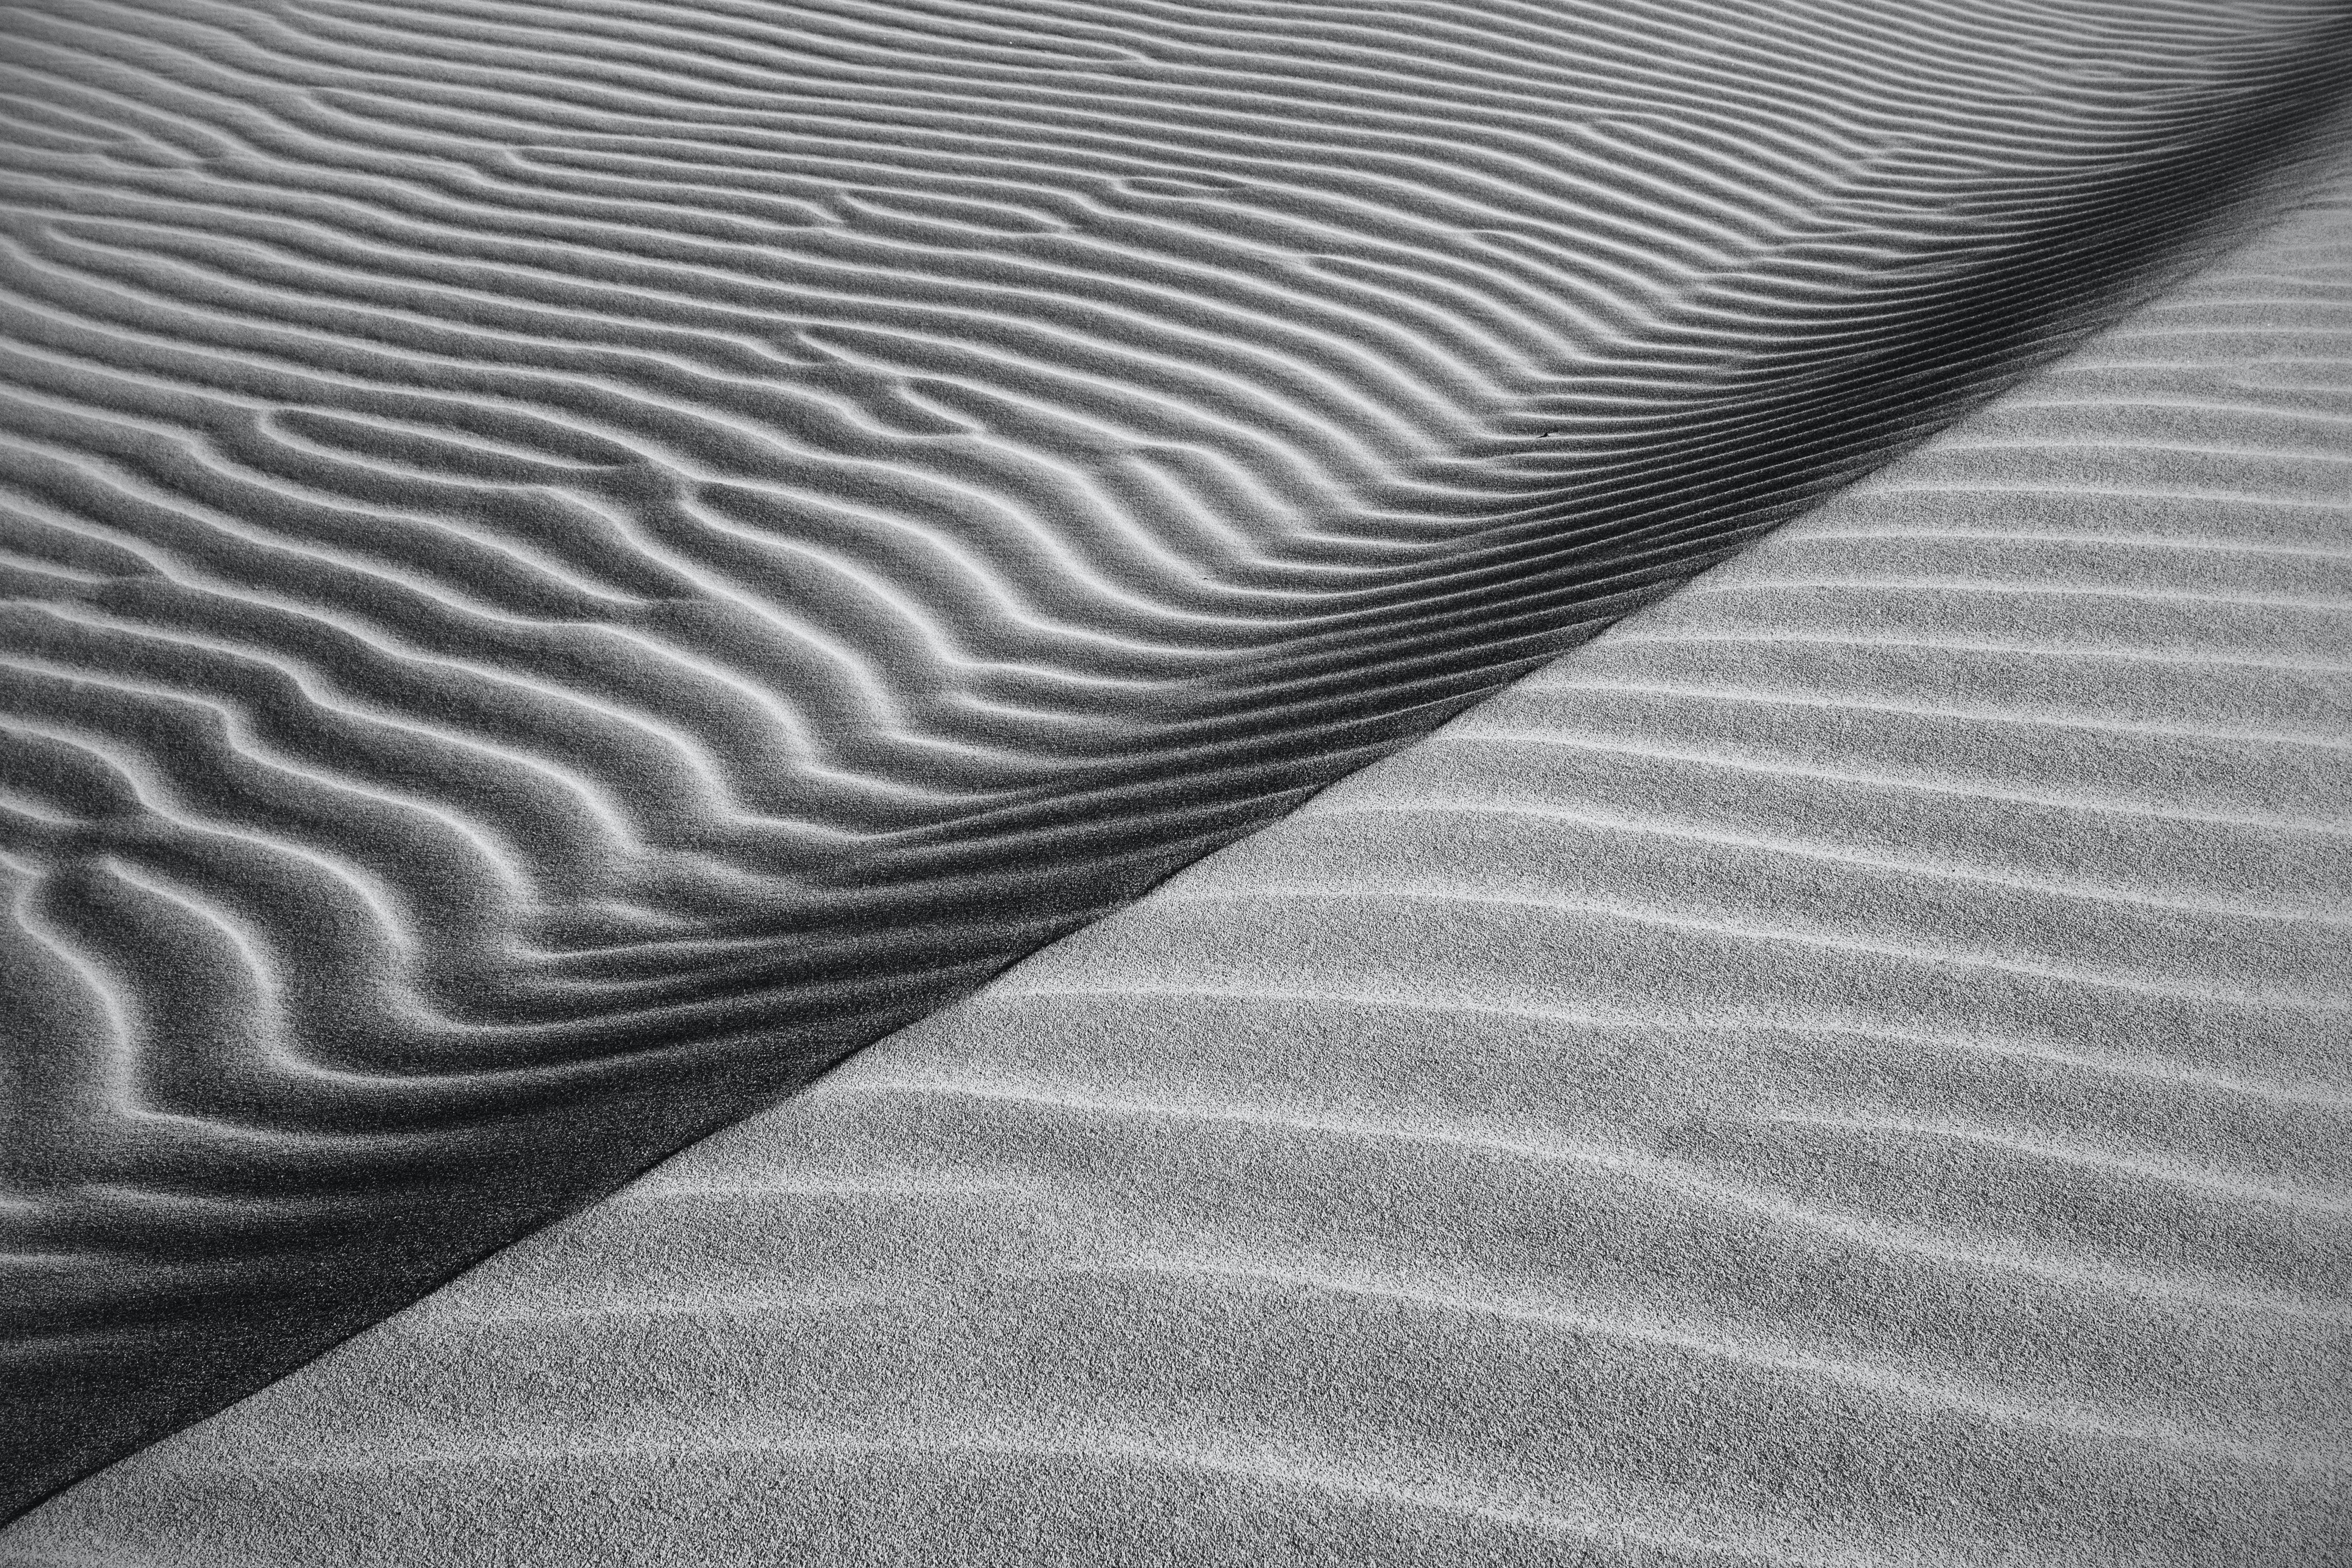 Dune HD photos